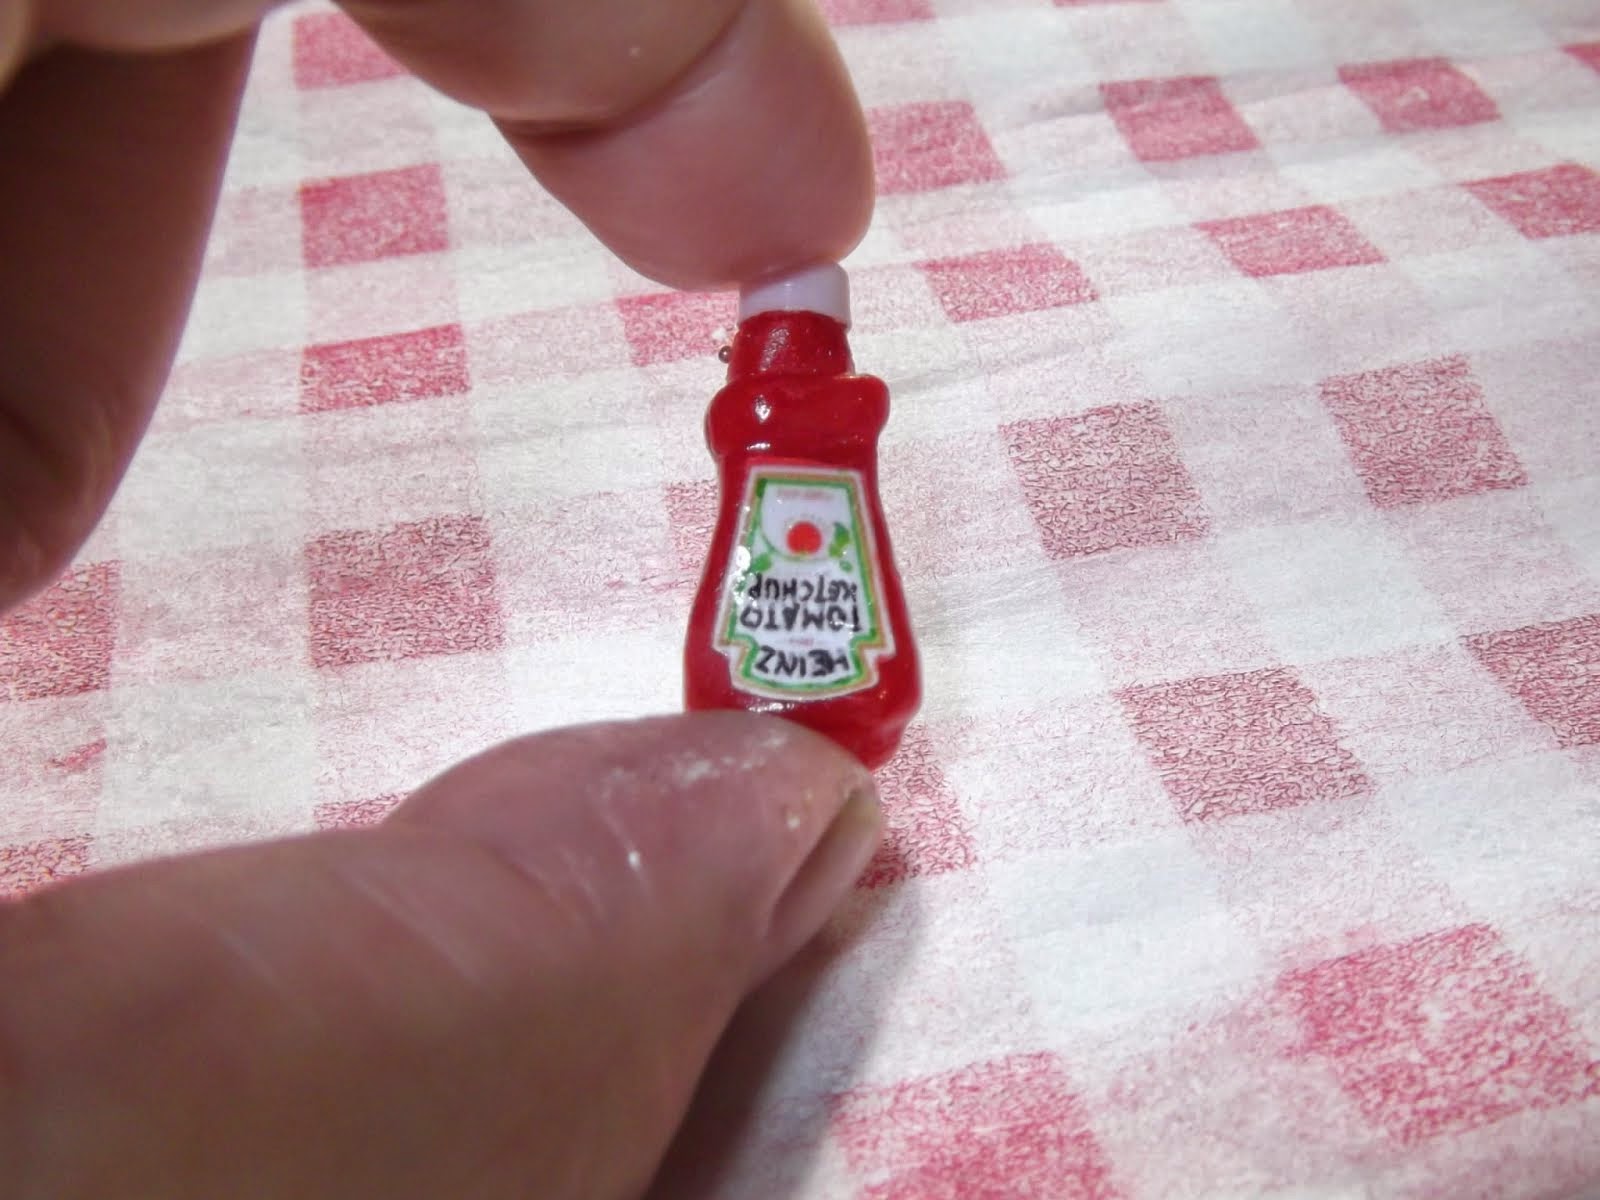 Miniature Heinz ketchup bottle